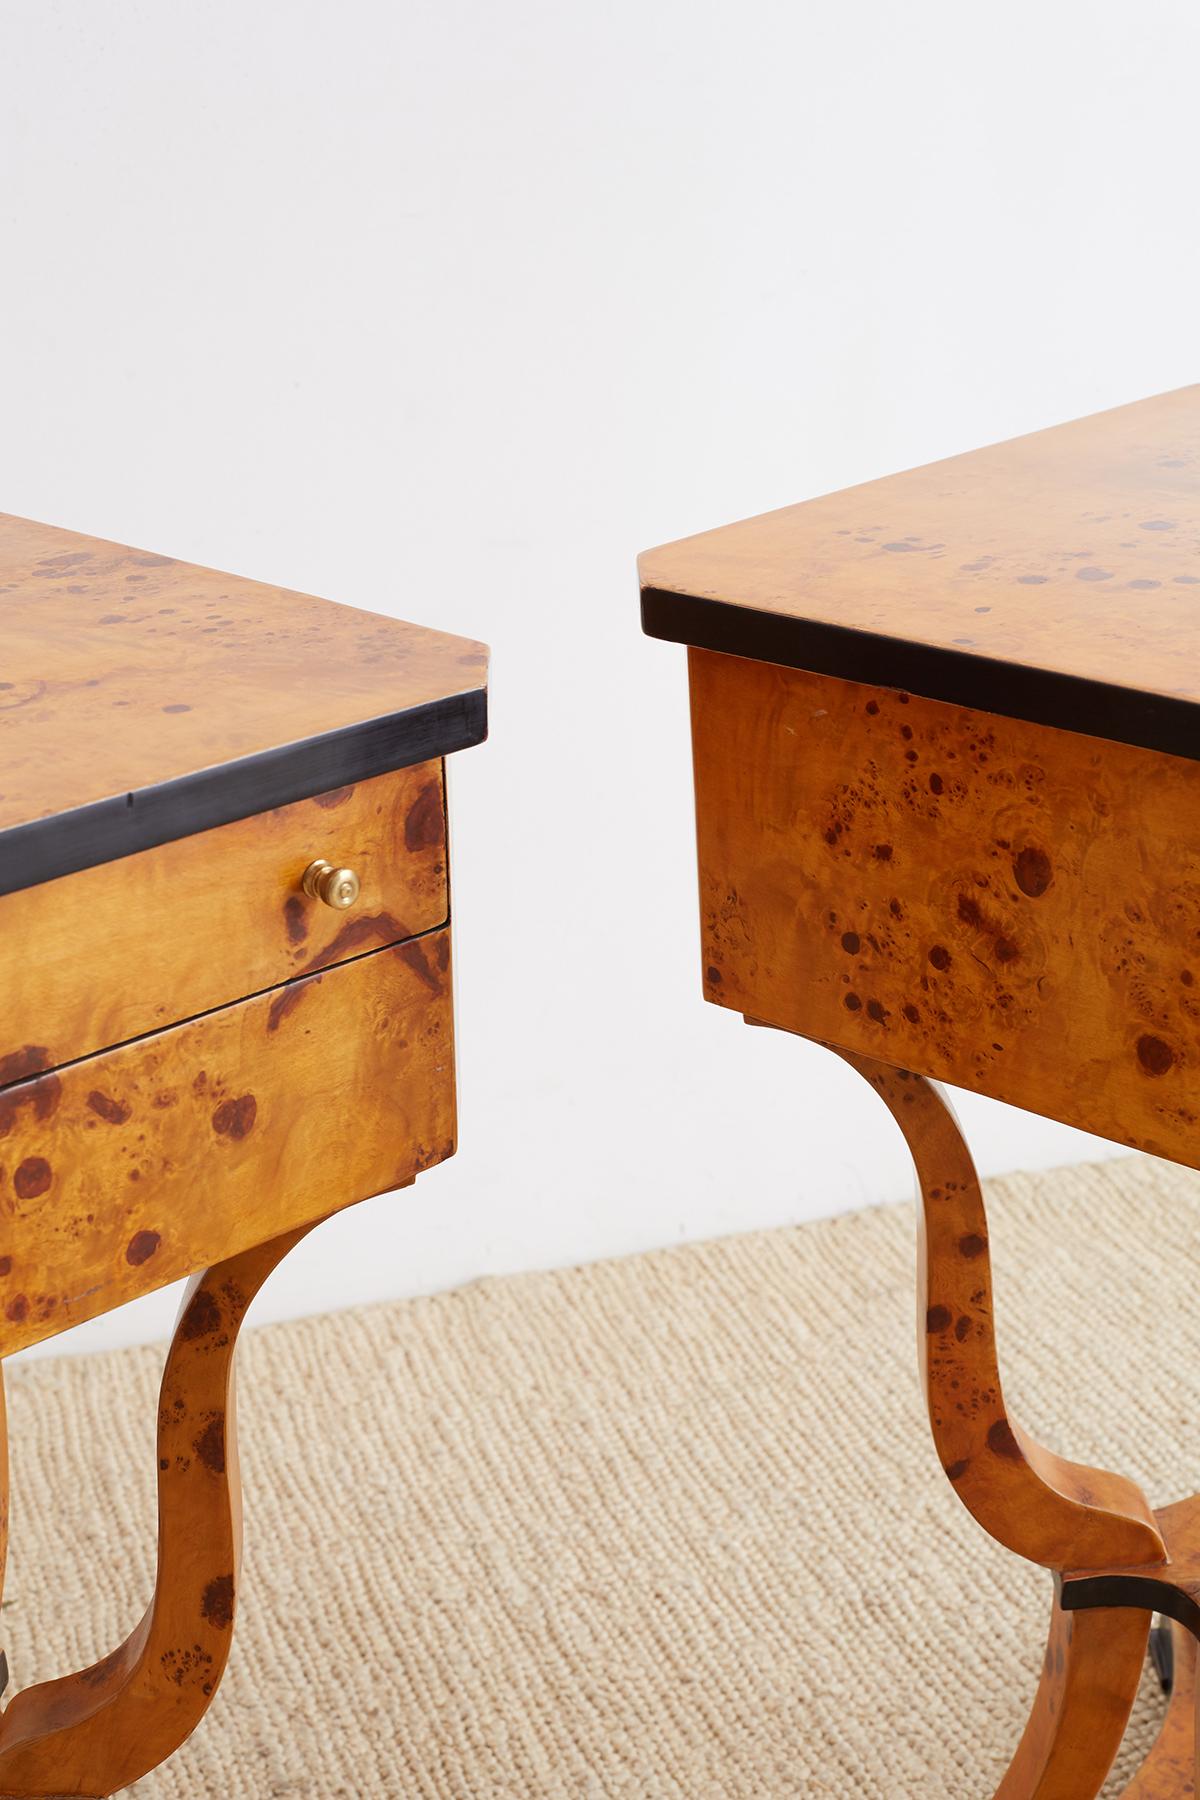 Pair of Swedish Biedermeier Style Sewing Table or Nightstands (Handgefertigt)